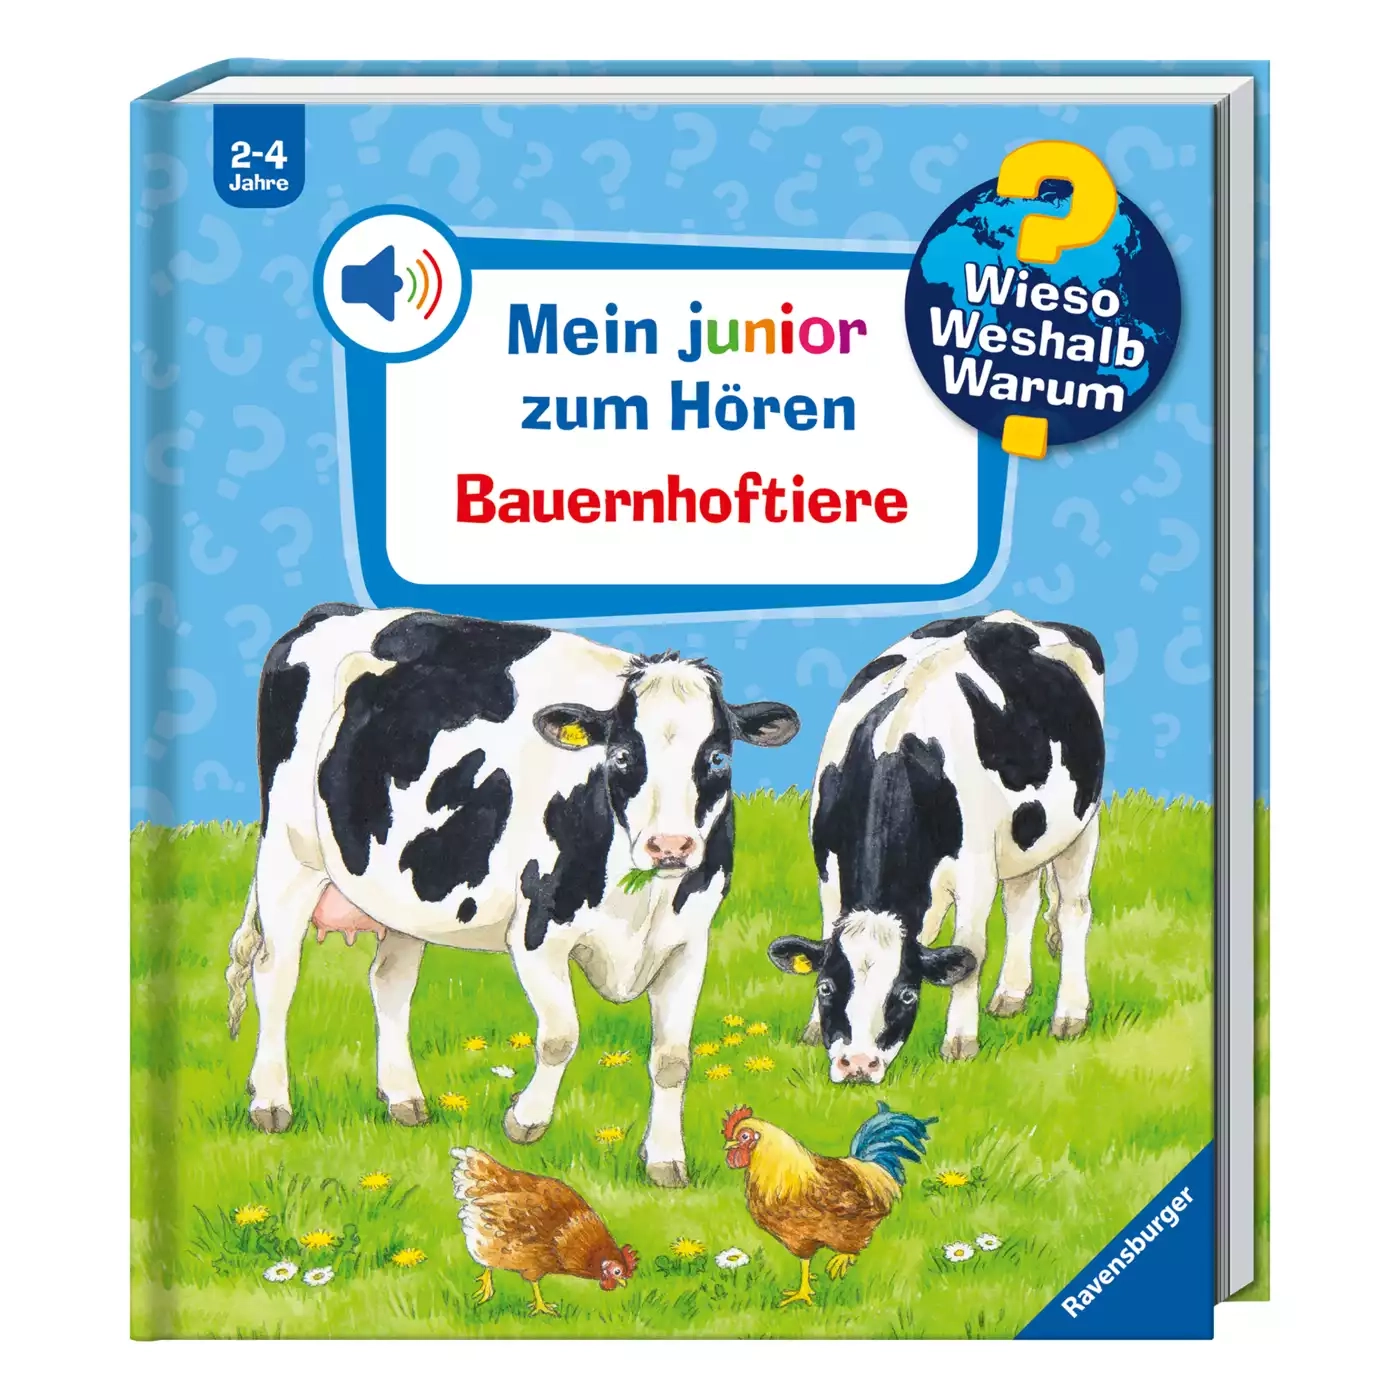 WWW Mein junior zum Hören: Bauernhoftiere Ravensburger 2000578897703 1